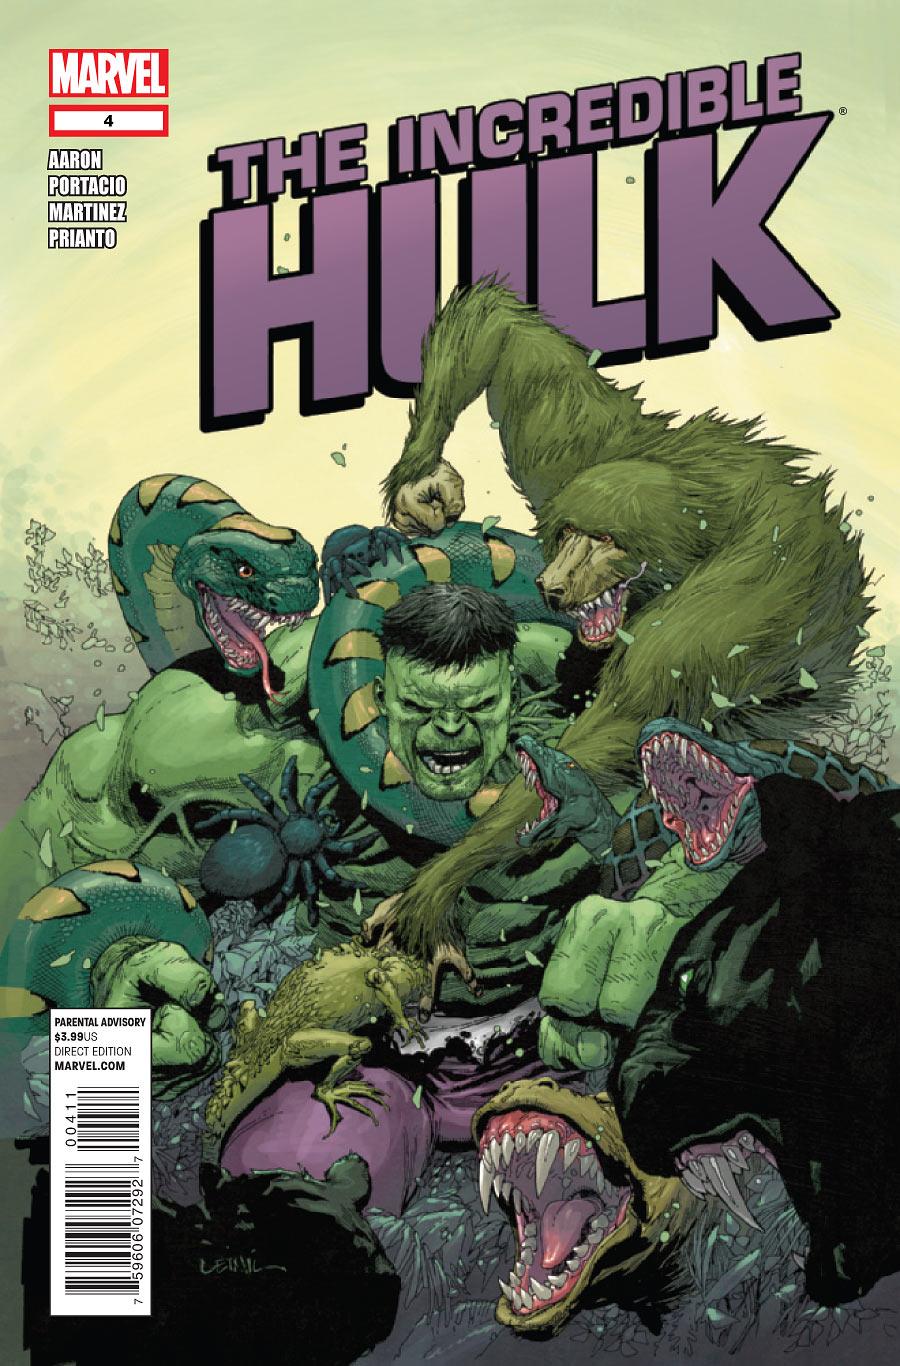 The Incredible Hulk Vol. 3 #4